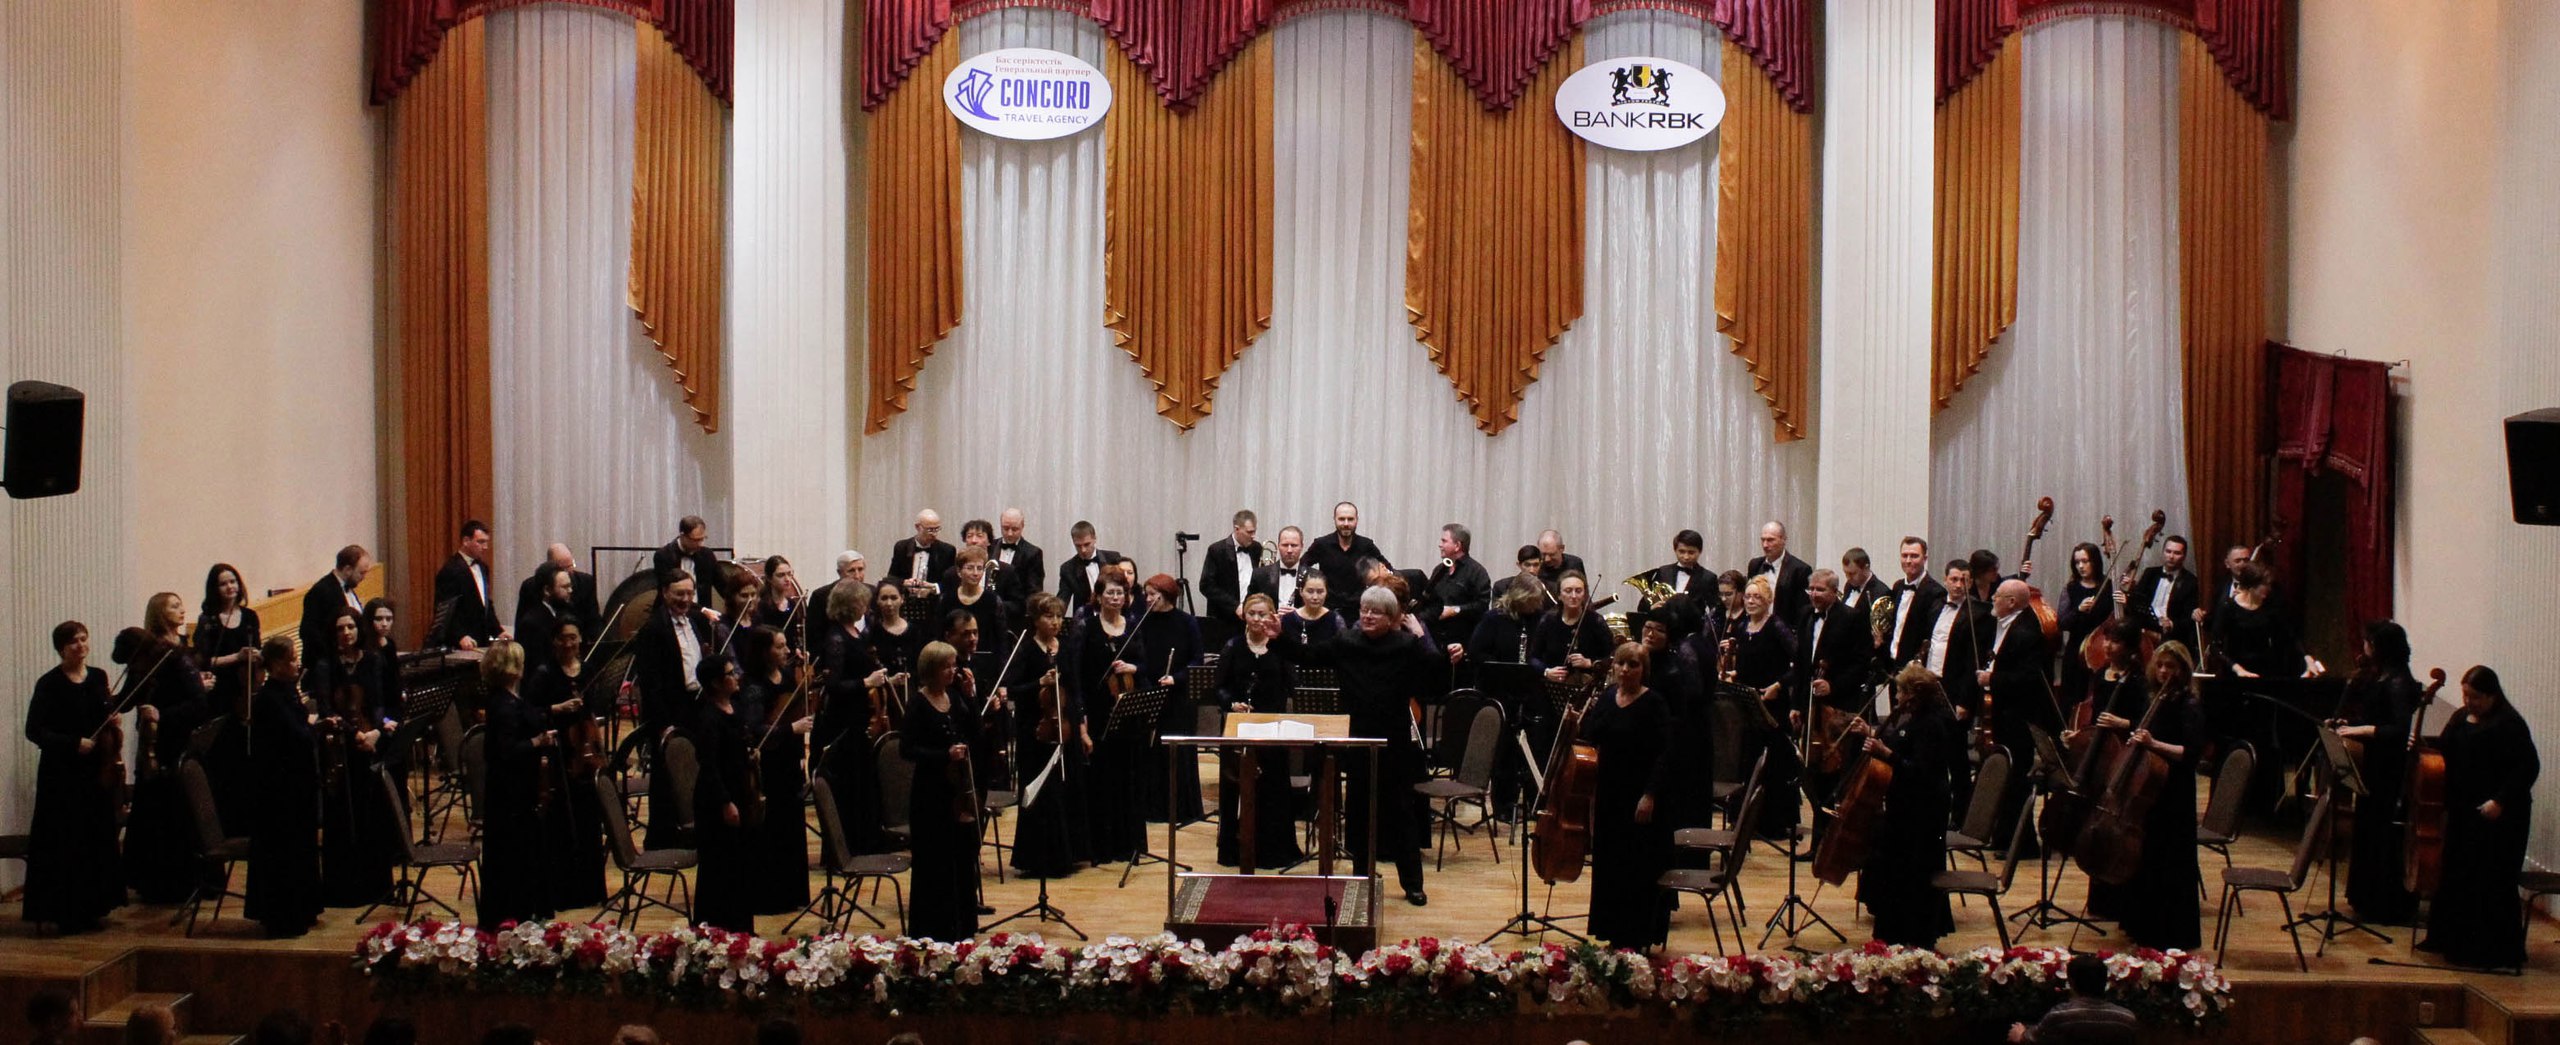 25 февраля 2017 года зрители Караганды с восторгом слушали программу концерта симфонического оркестра